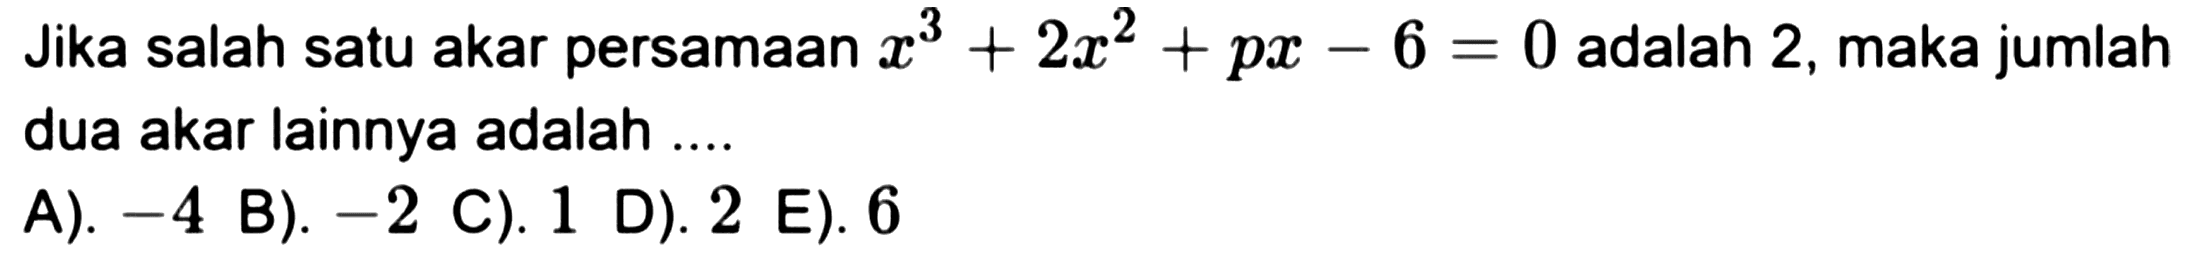 Jika salah satu akar persamaan  x^(3)+2 x^(2)+p x-6=0  adalah 2 , maka jumlah dua akar lainnya adalah ....
A).  -4 
B).  -2 
C). 1
D). 2 E). 6